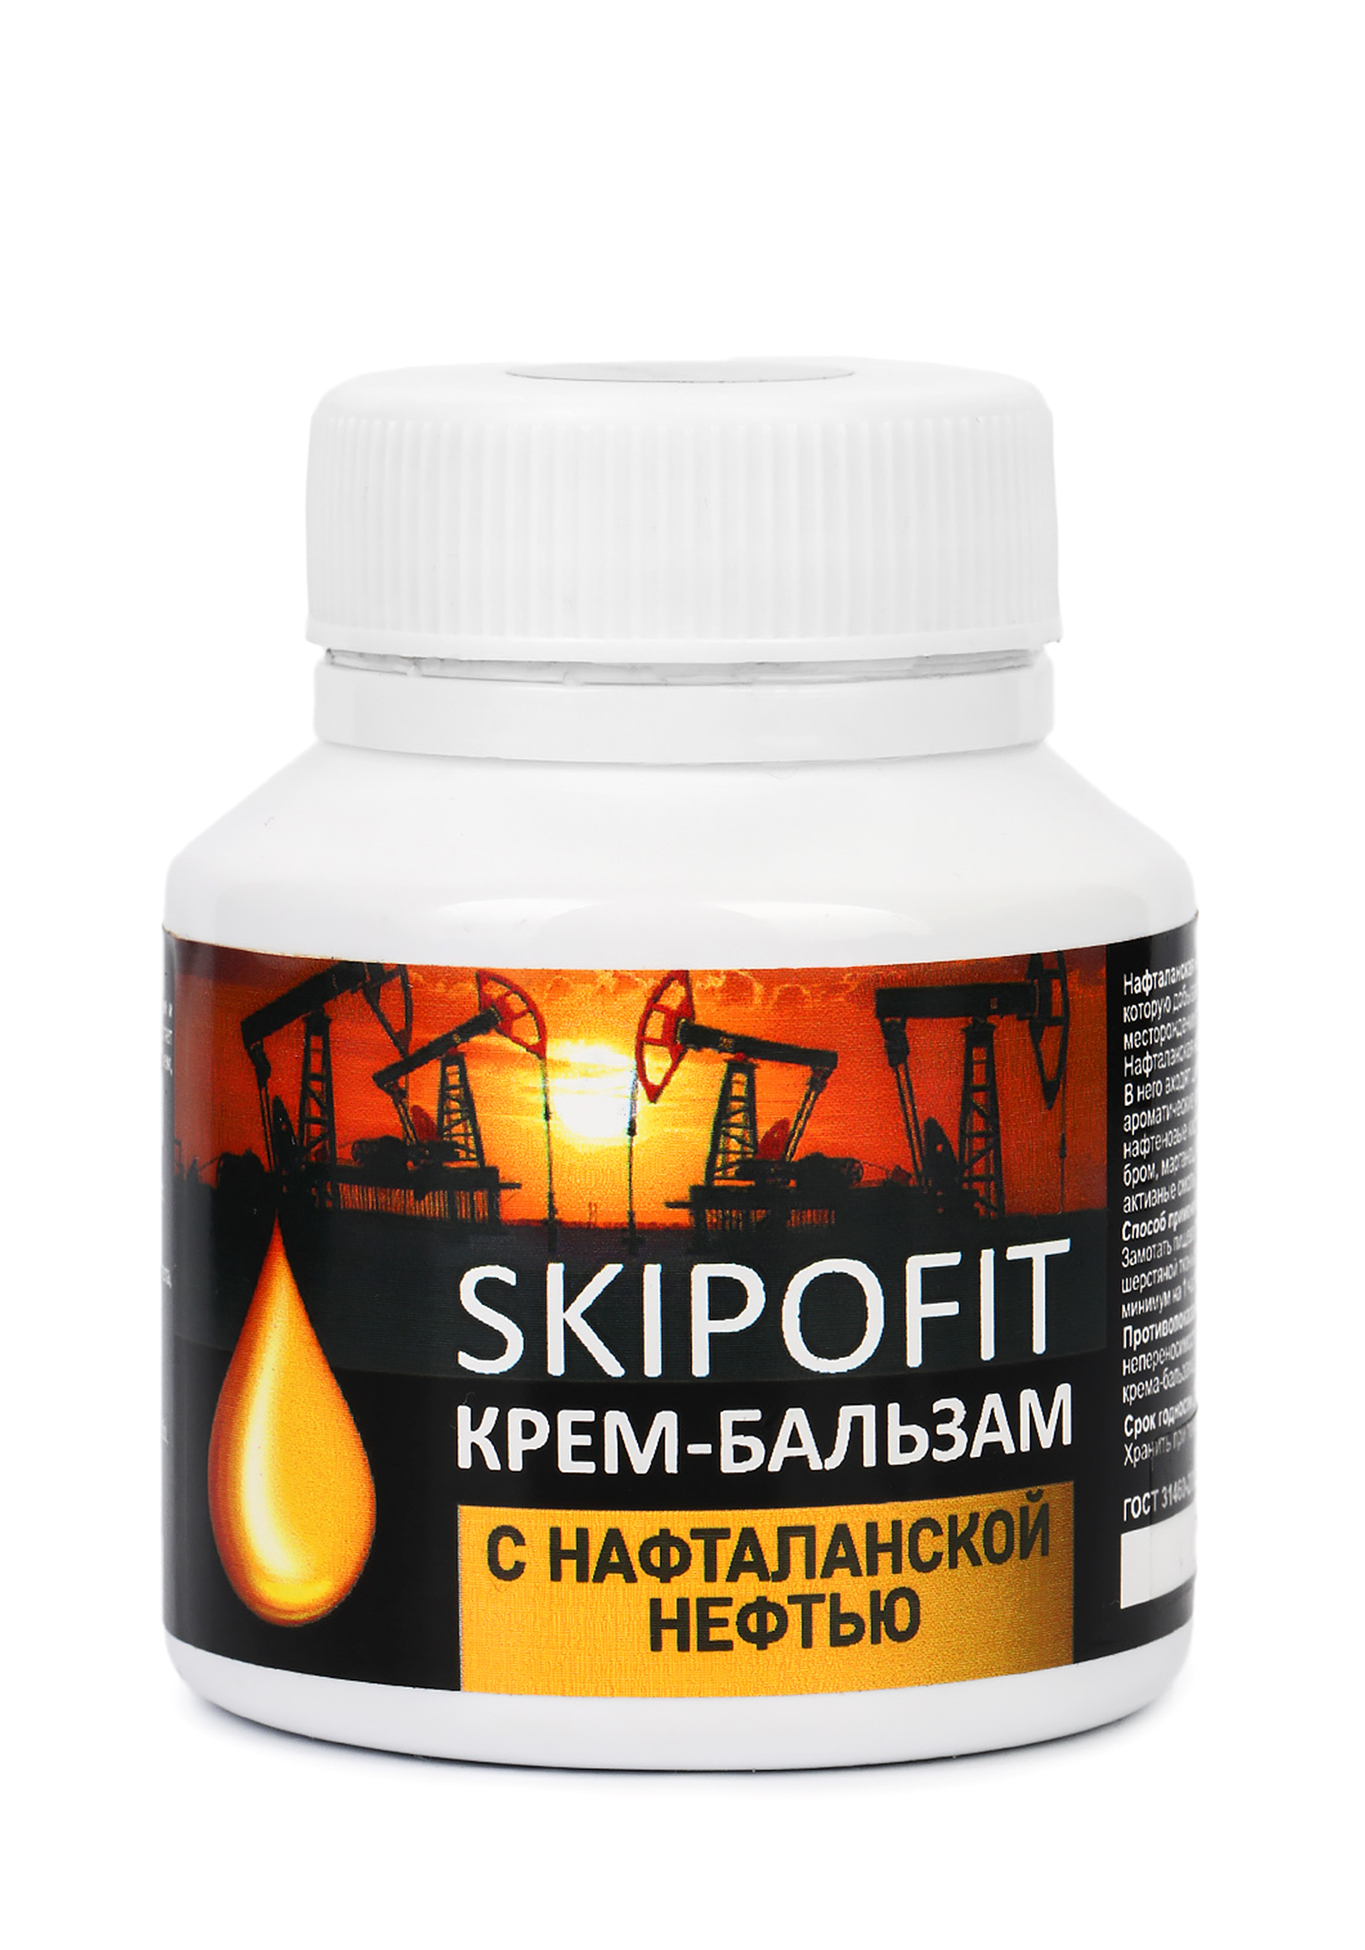 Крем-бальзам «Нафталанская нефть», 3 шт. + подарок SKIPOFIT - фото 2